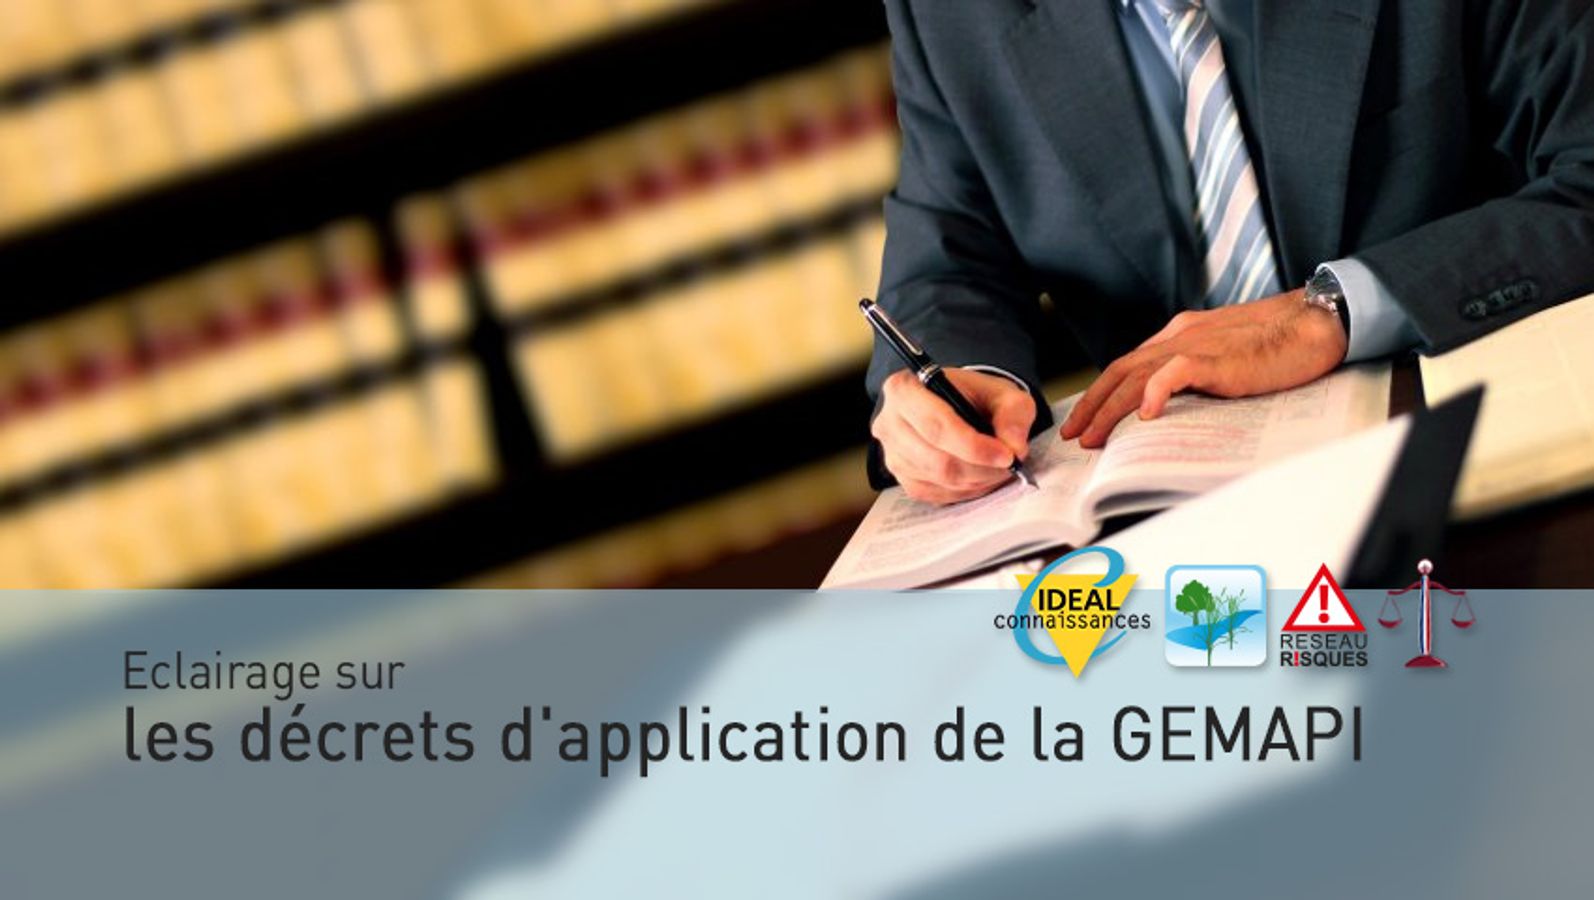 Eclairage sur les décrets d'application de la GEMAPI